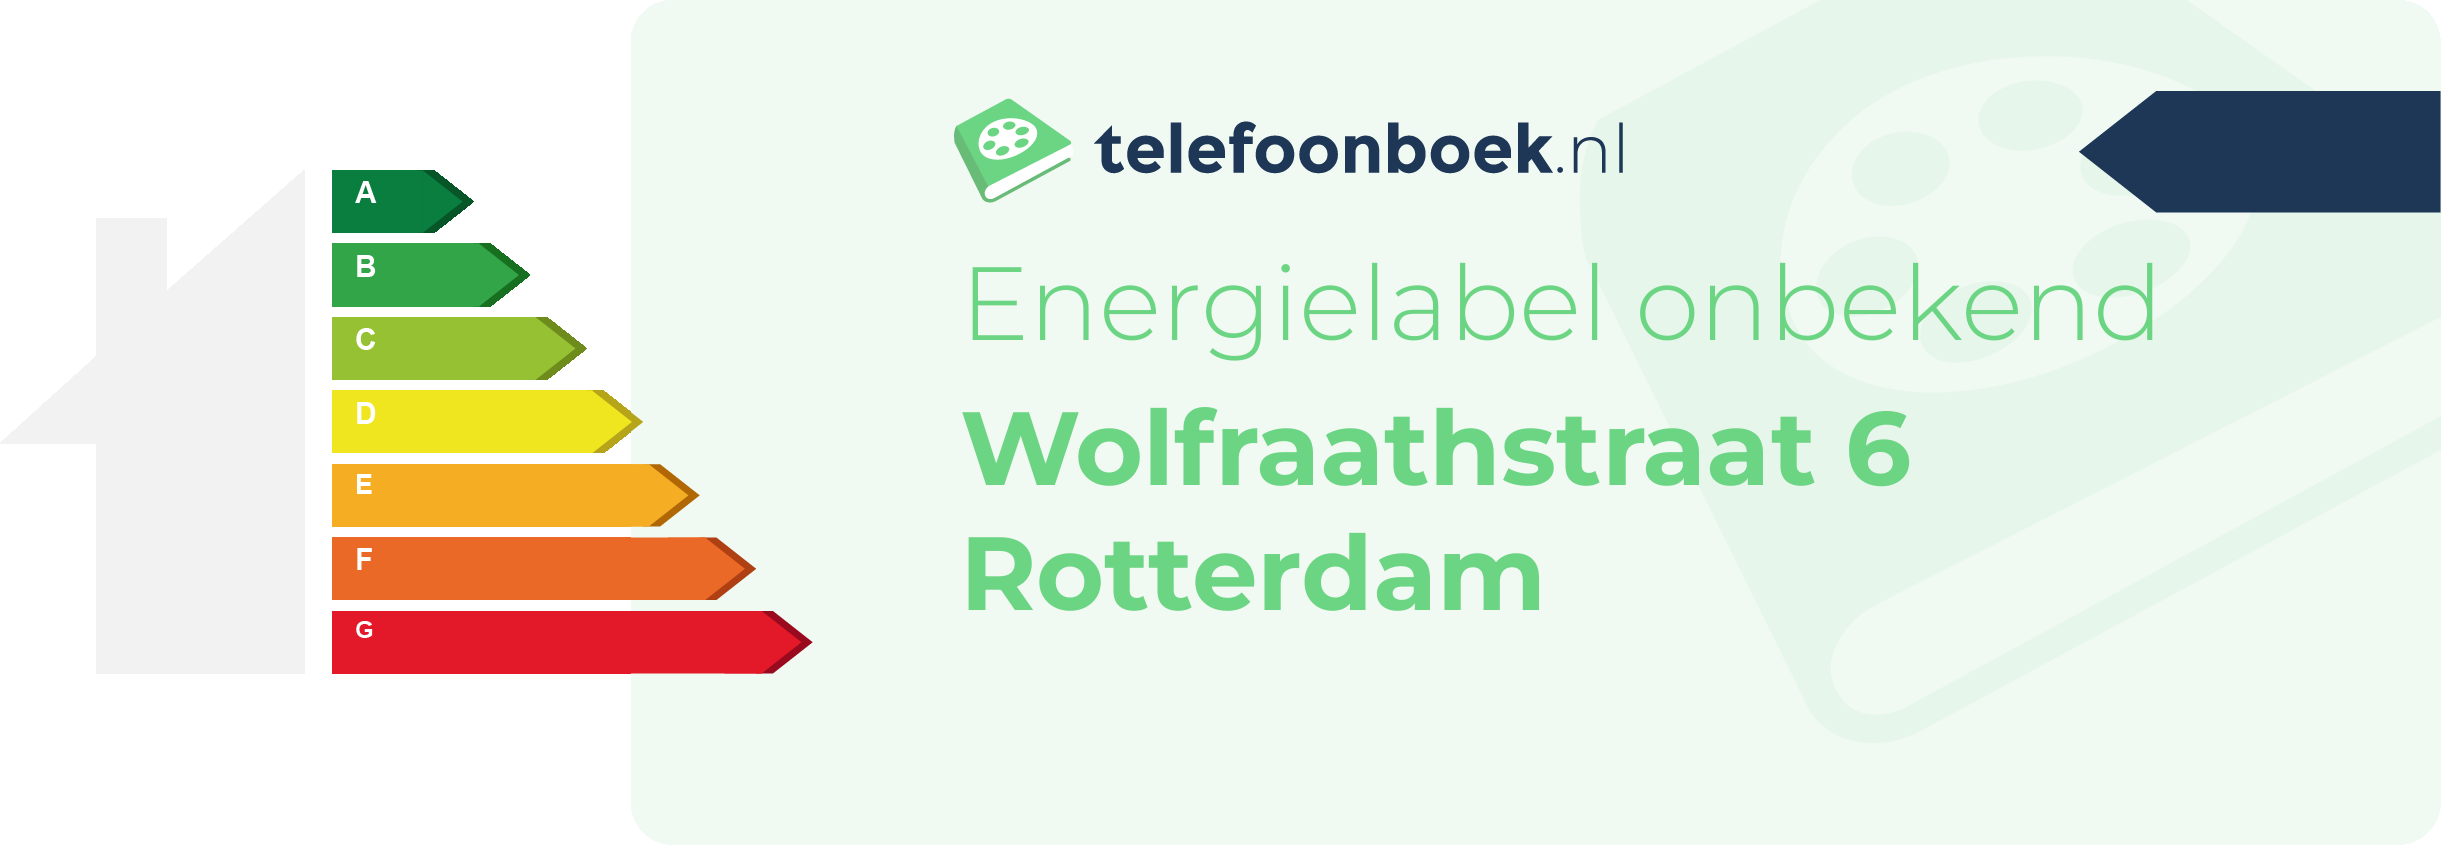 Energielabel Wolfraathstraat 6 Rotterdam